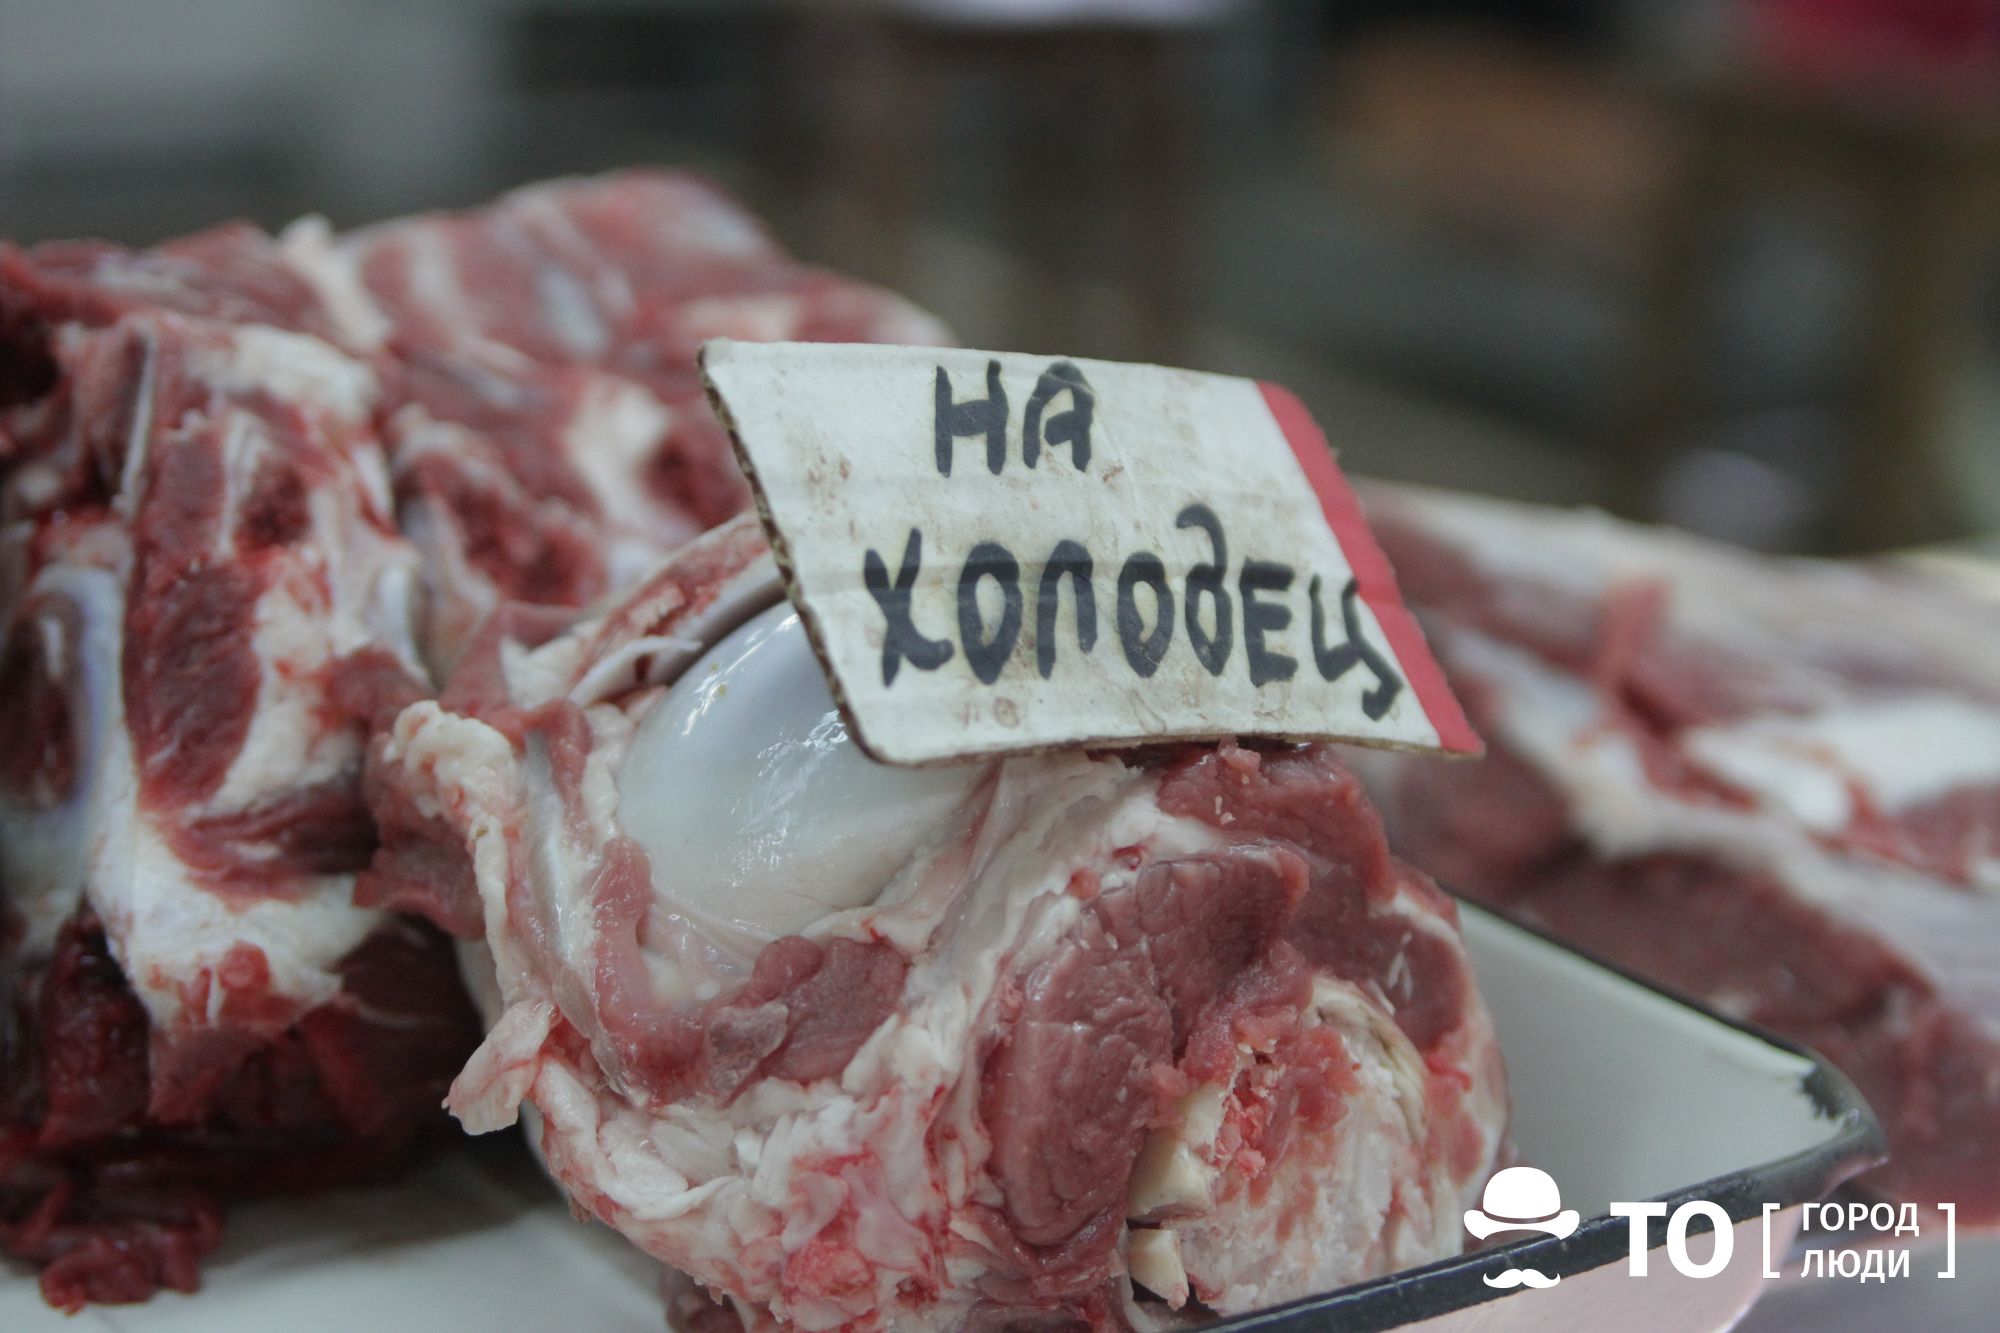 Криминал, Томские новости, арестовали агрохолдинг арест мясная продукция Два десятка работников томского агрохолдинга пойдут под суд за кражу мясной продукции